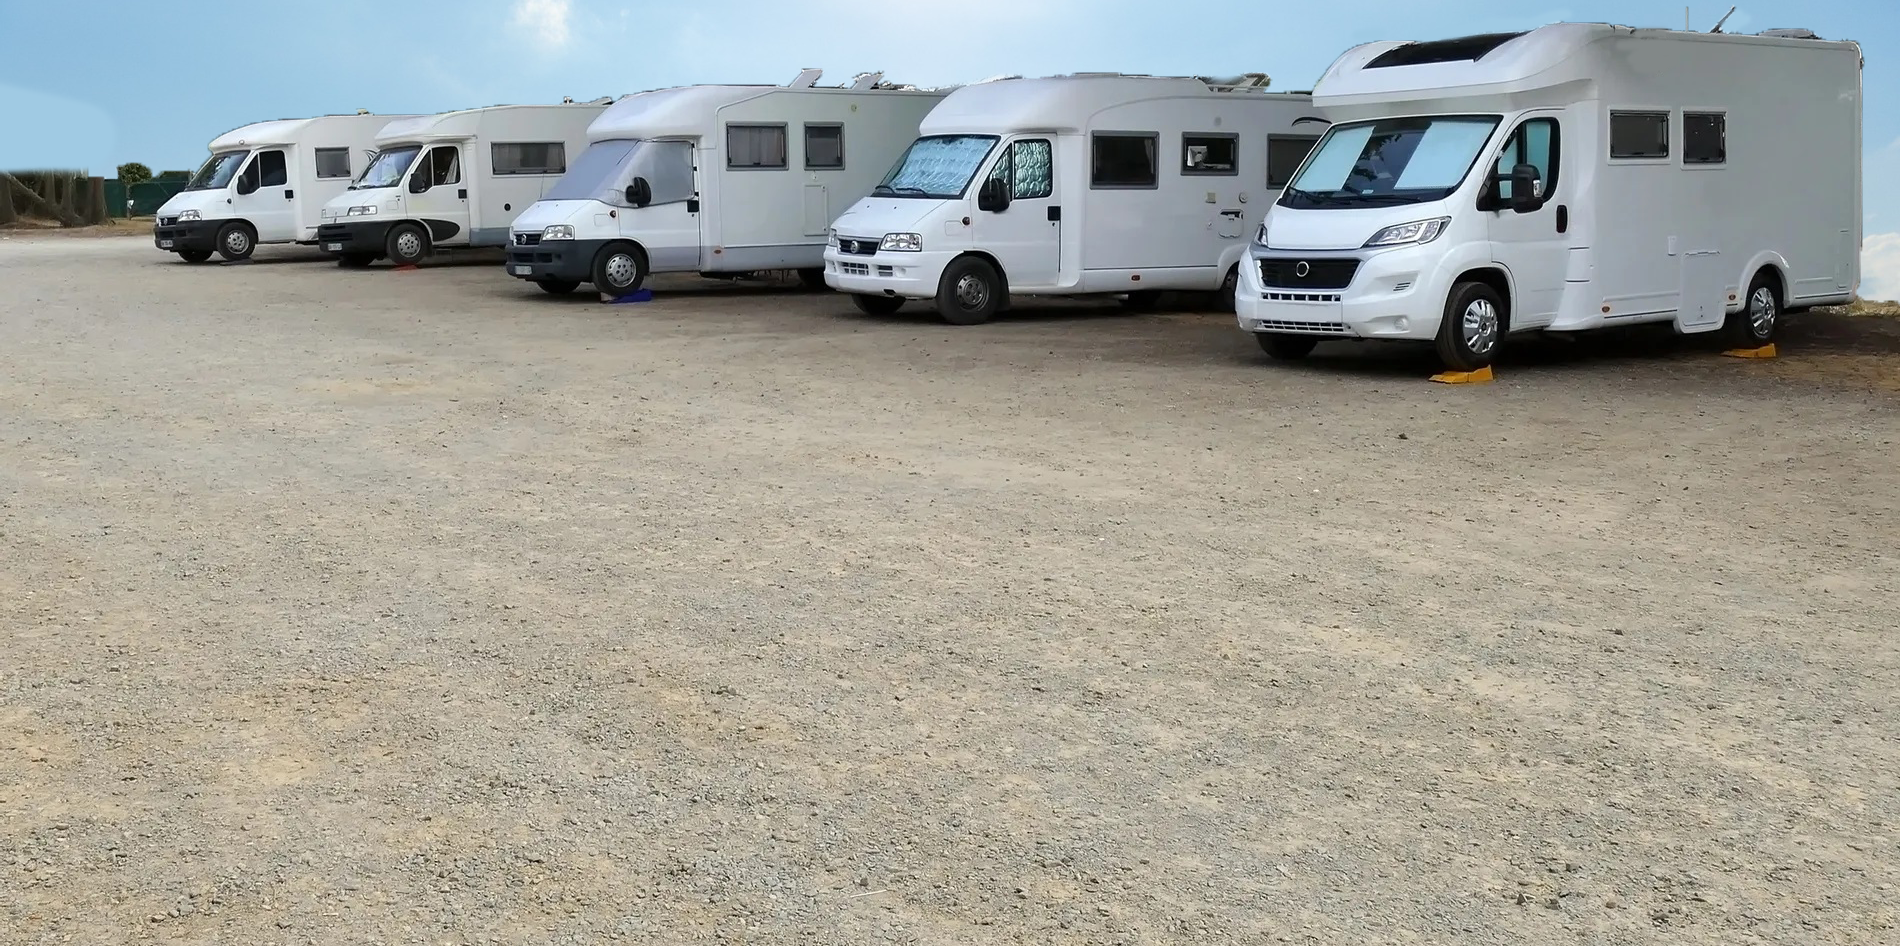 Kuna Mora RV Storage - Outdoor RV/Vehicle Parking in Kuna, ID